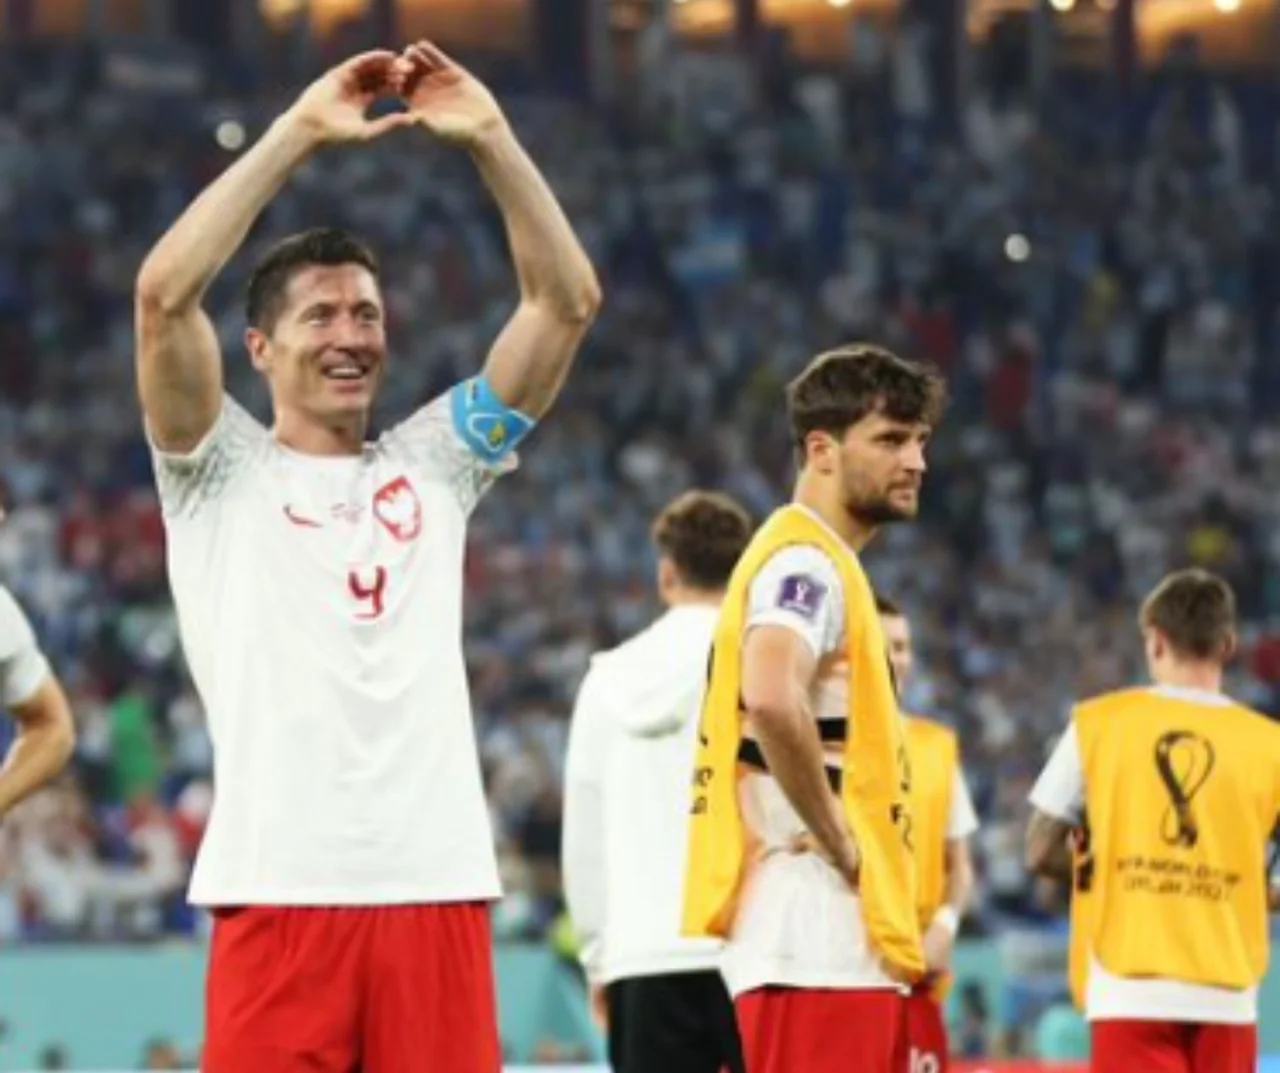 Polski piłkarz dotrzymał słowa - ogolił się na łyso po awansie na mundialu!